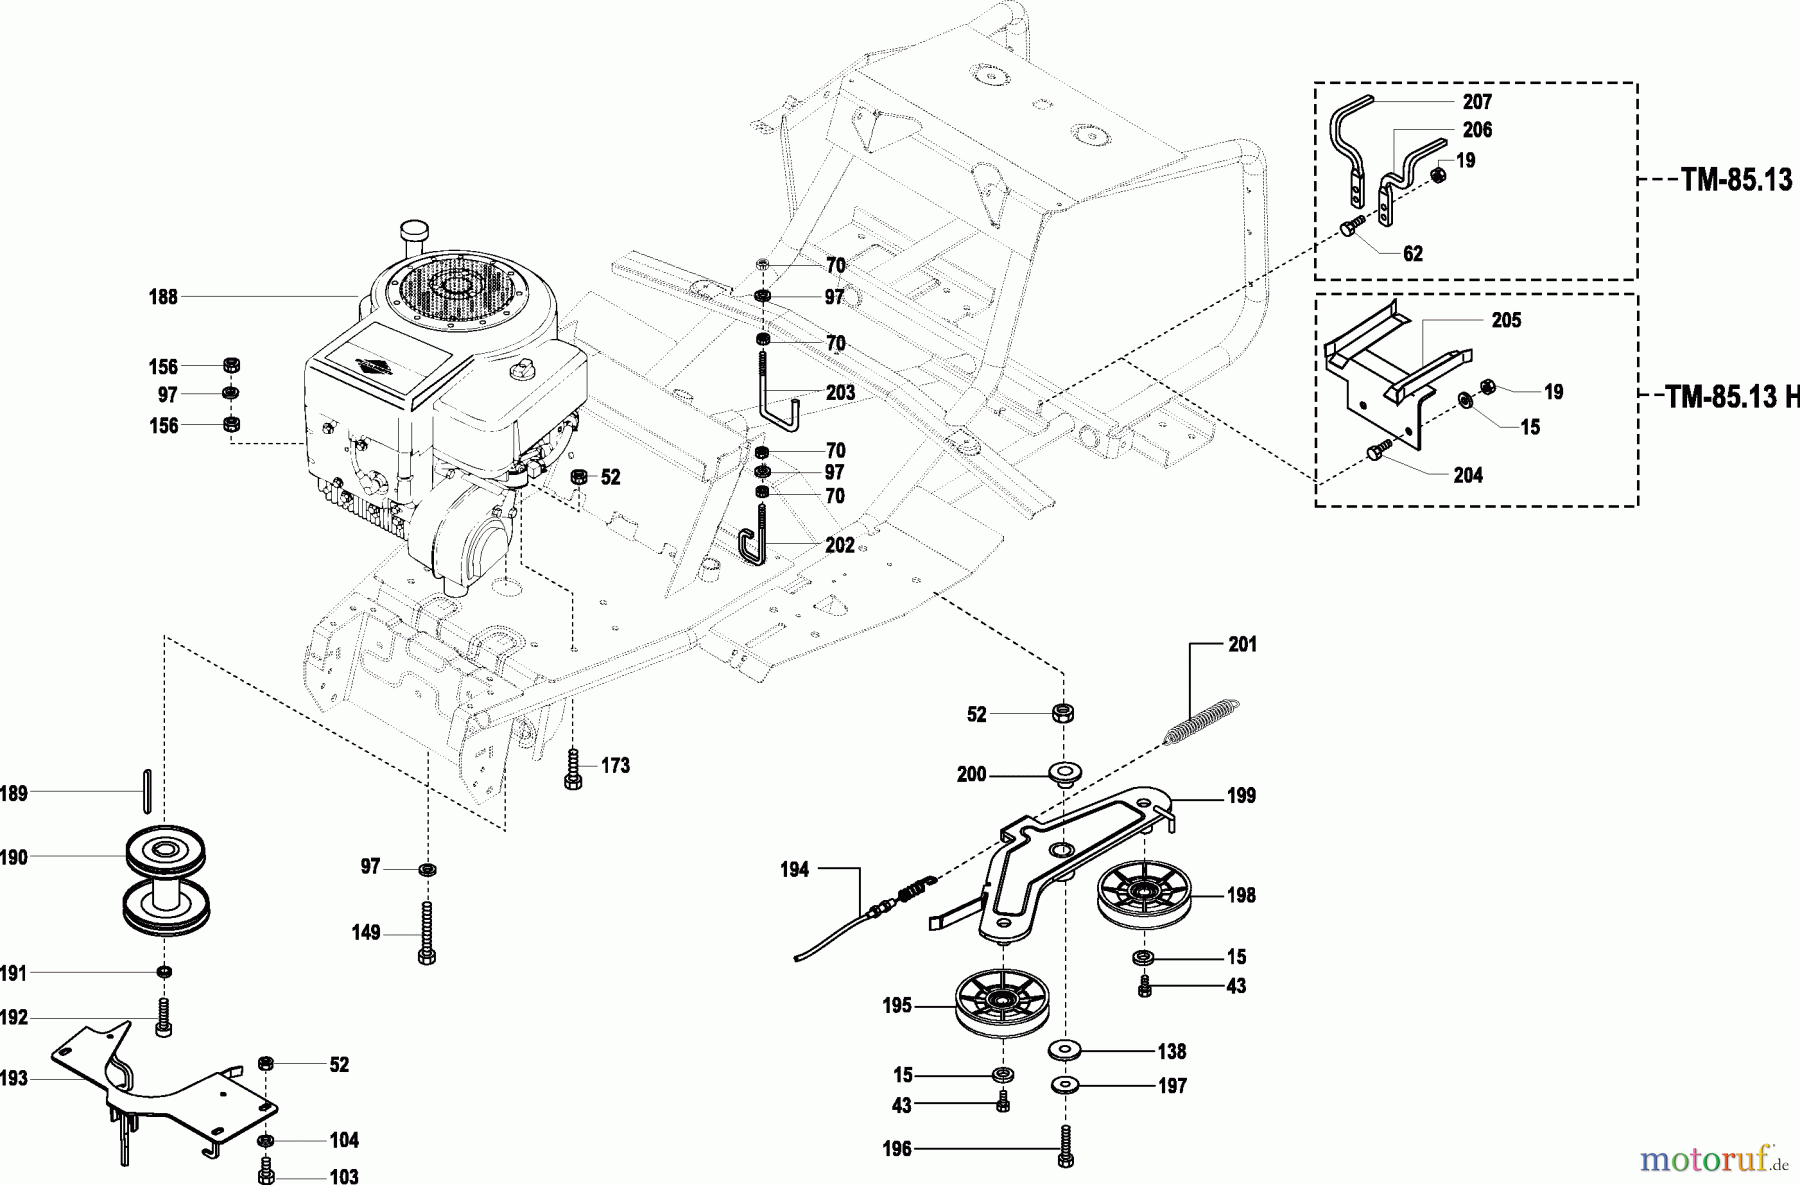  Dolmar Rasentraktoren TM-85.13 H TM-85.13 H (2002) 5  MOTOR